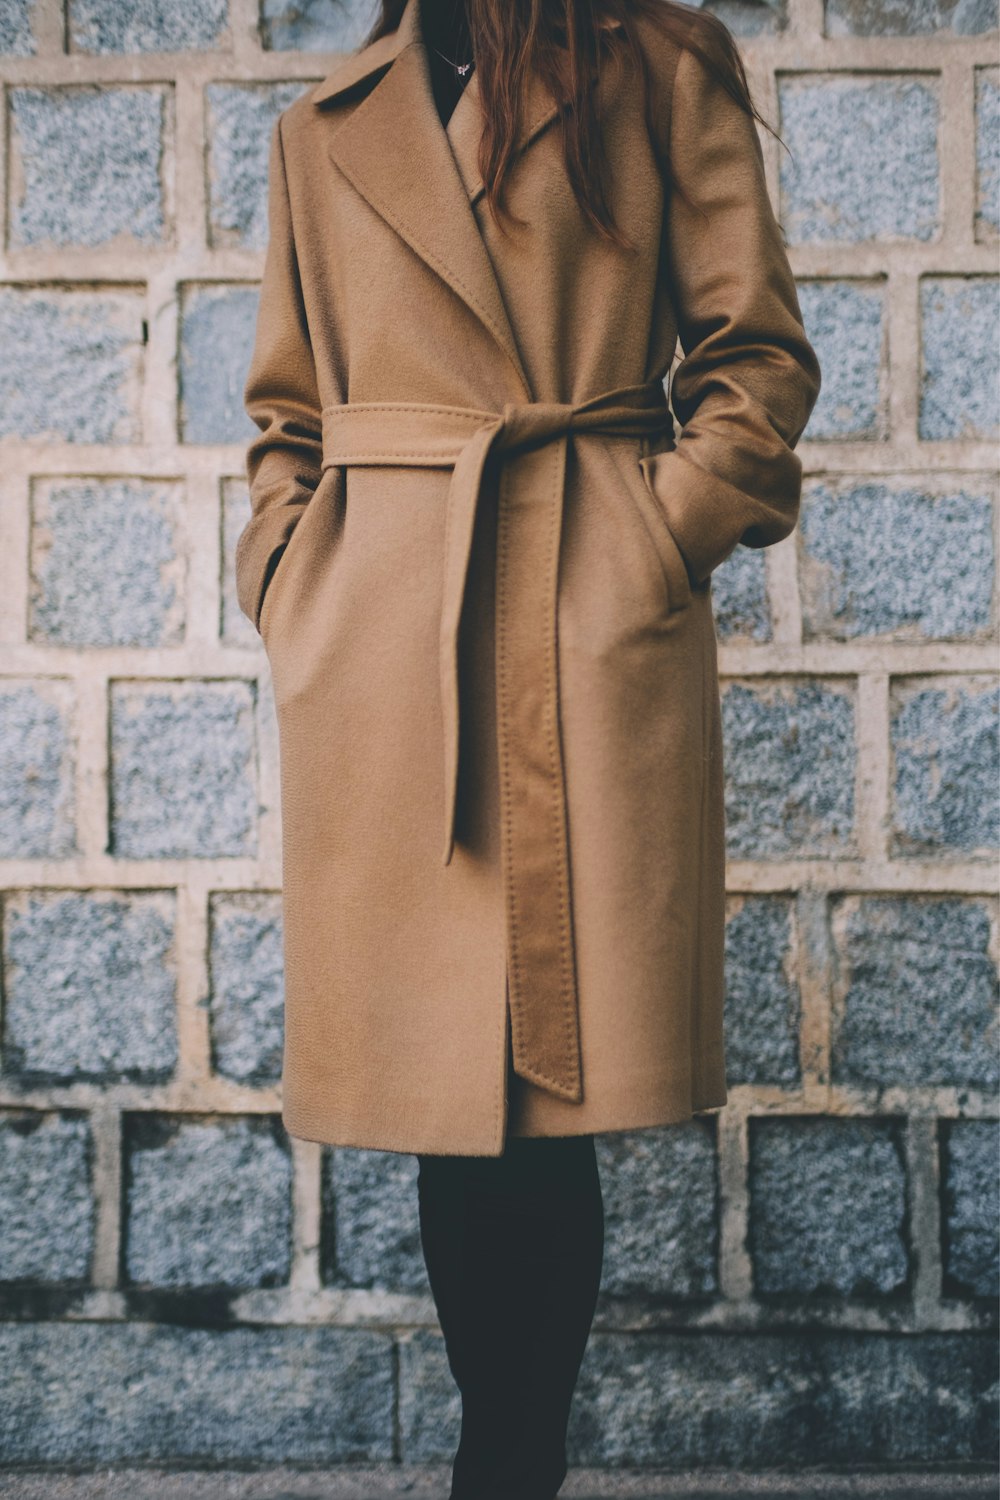 Femme portant un manteau marron à simple boutonnage debout devant un mur de briques grises